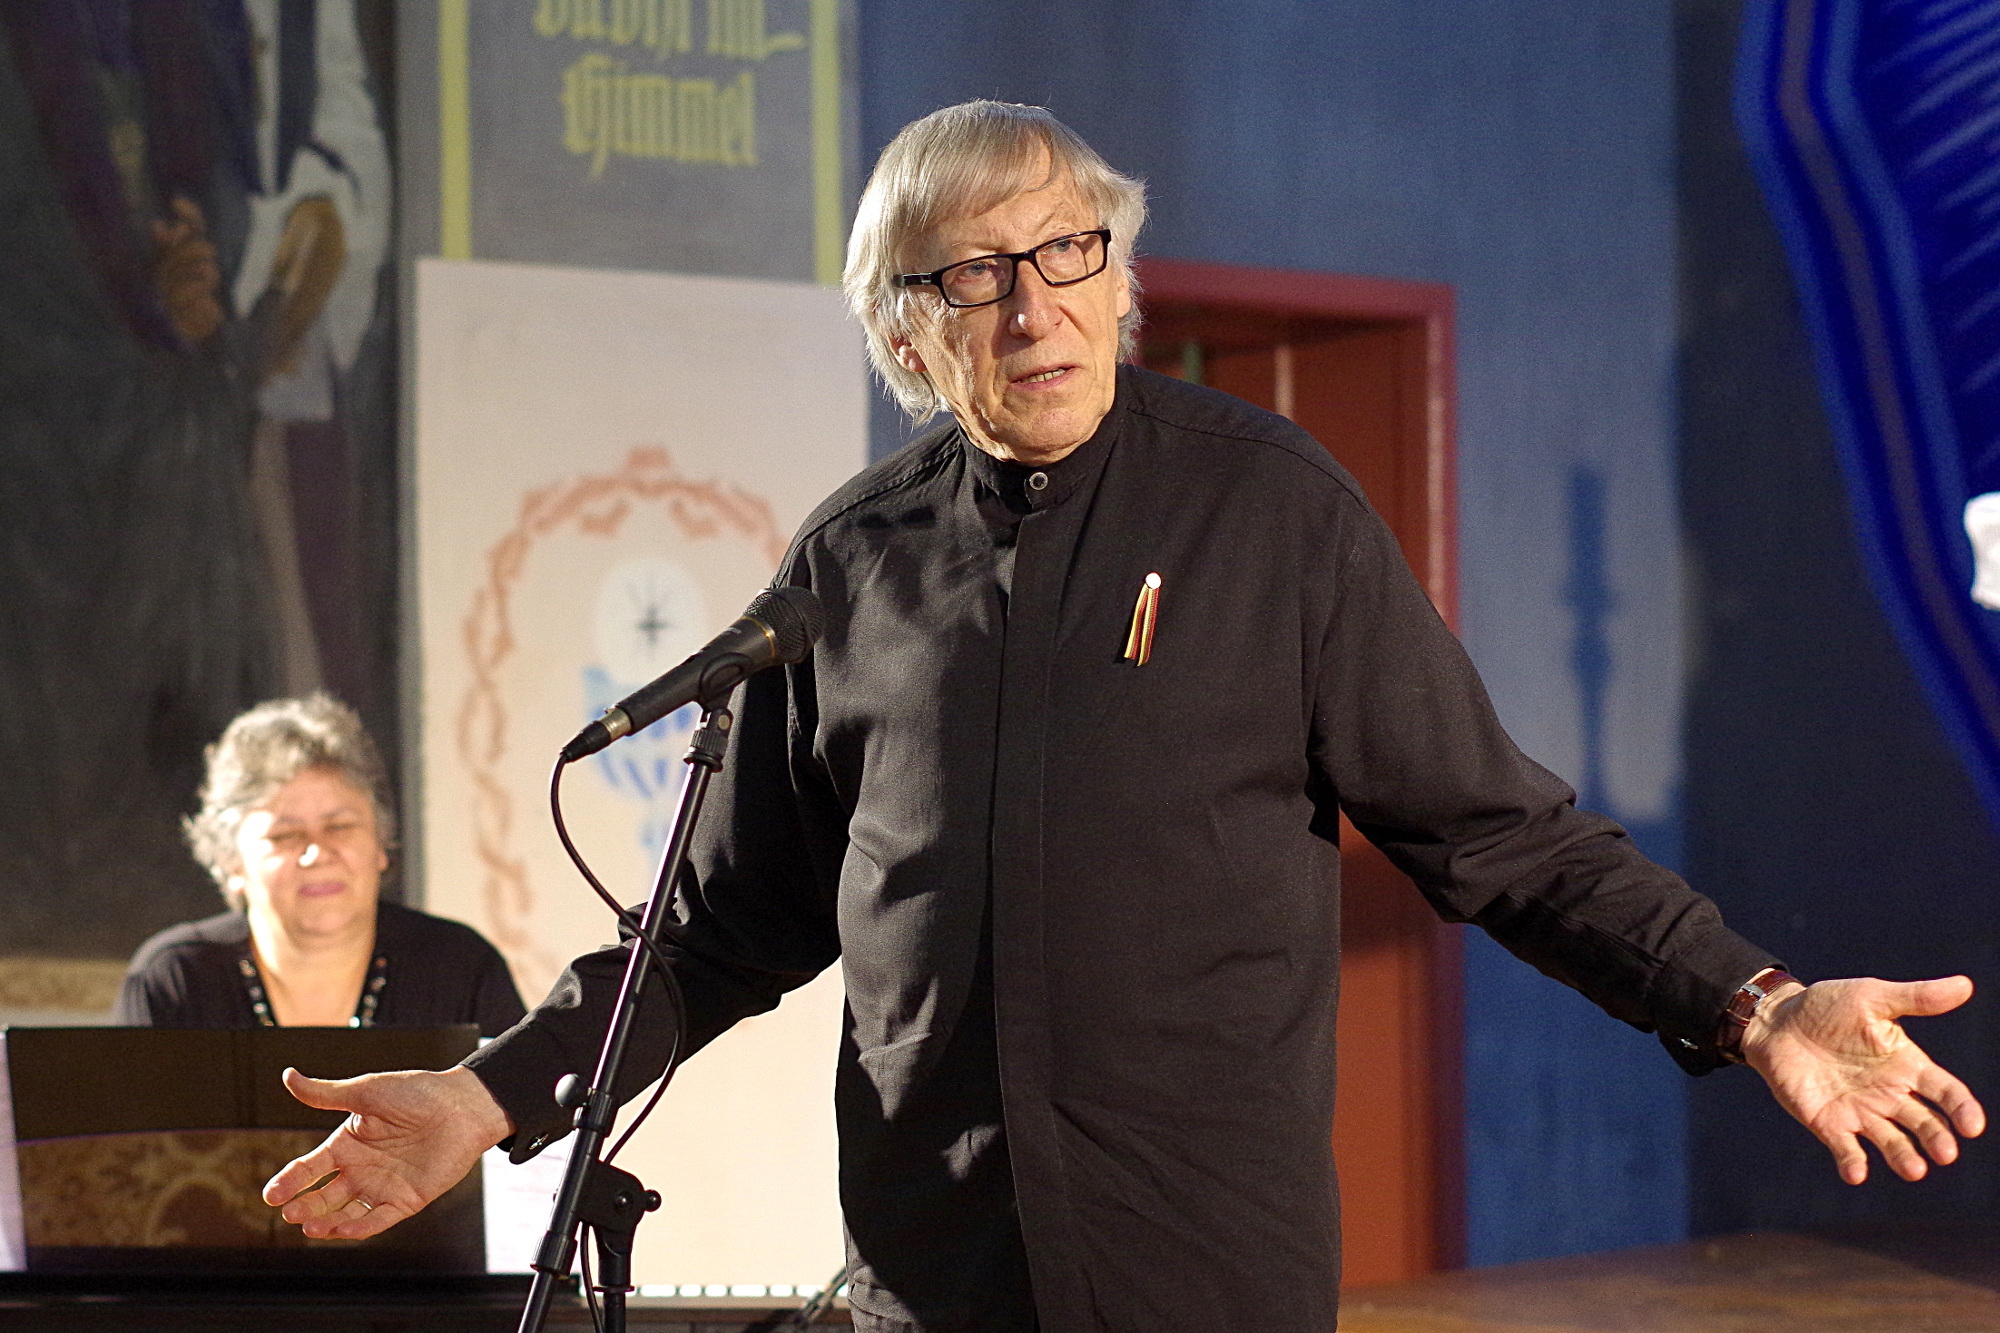 Lietuvos nacionalinės kultūros ir meno premijos laureatas, kompozitorius prof. Giedrius Kuprevičius sakė, kad pasauliui labai trūksta harmonijos.